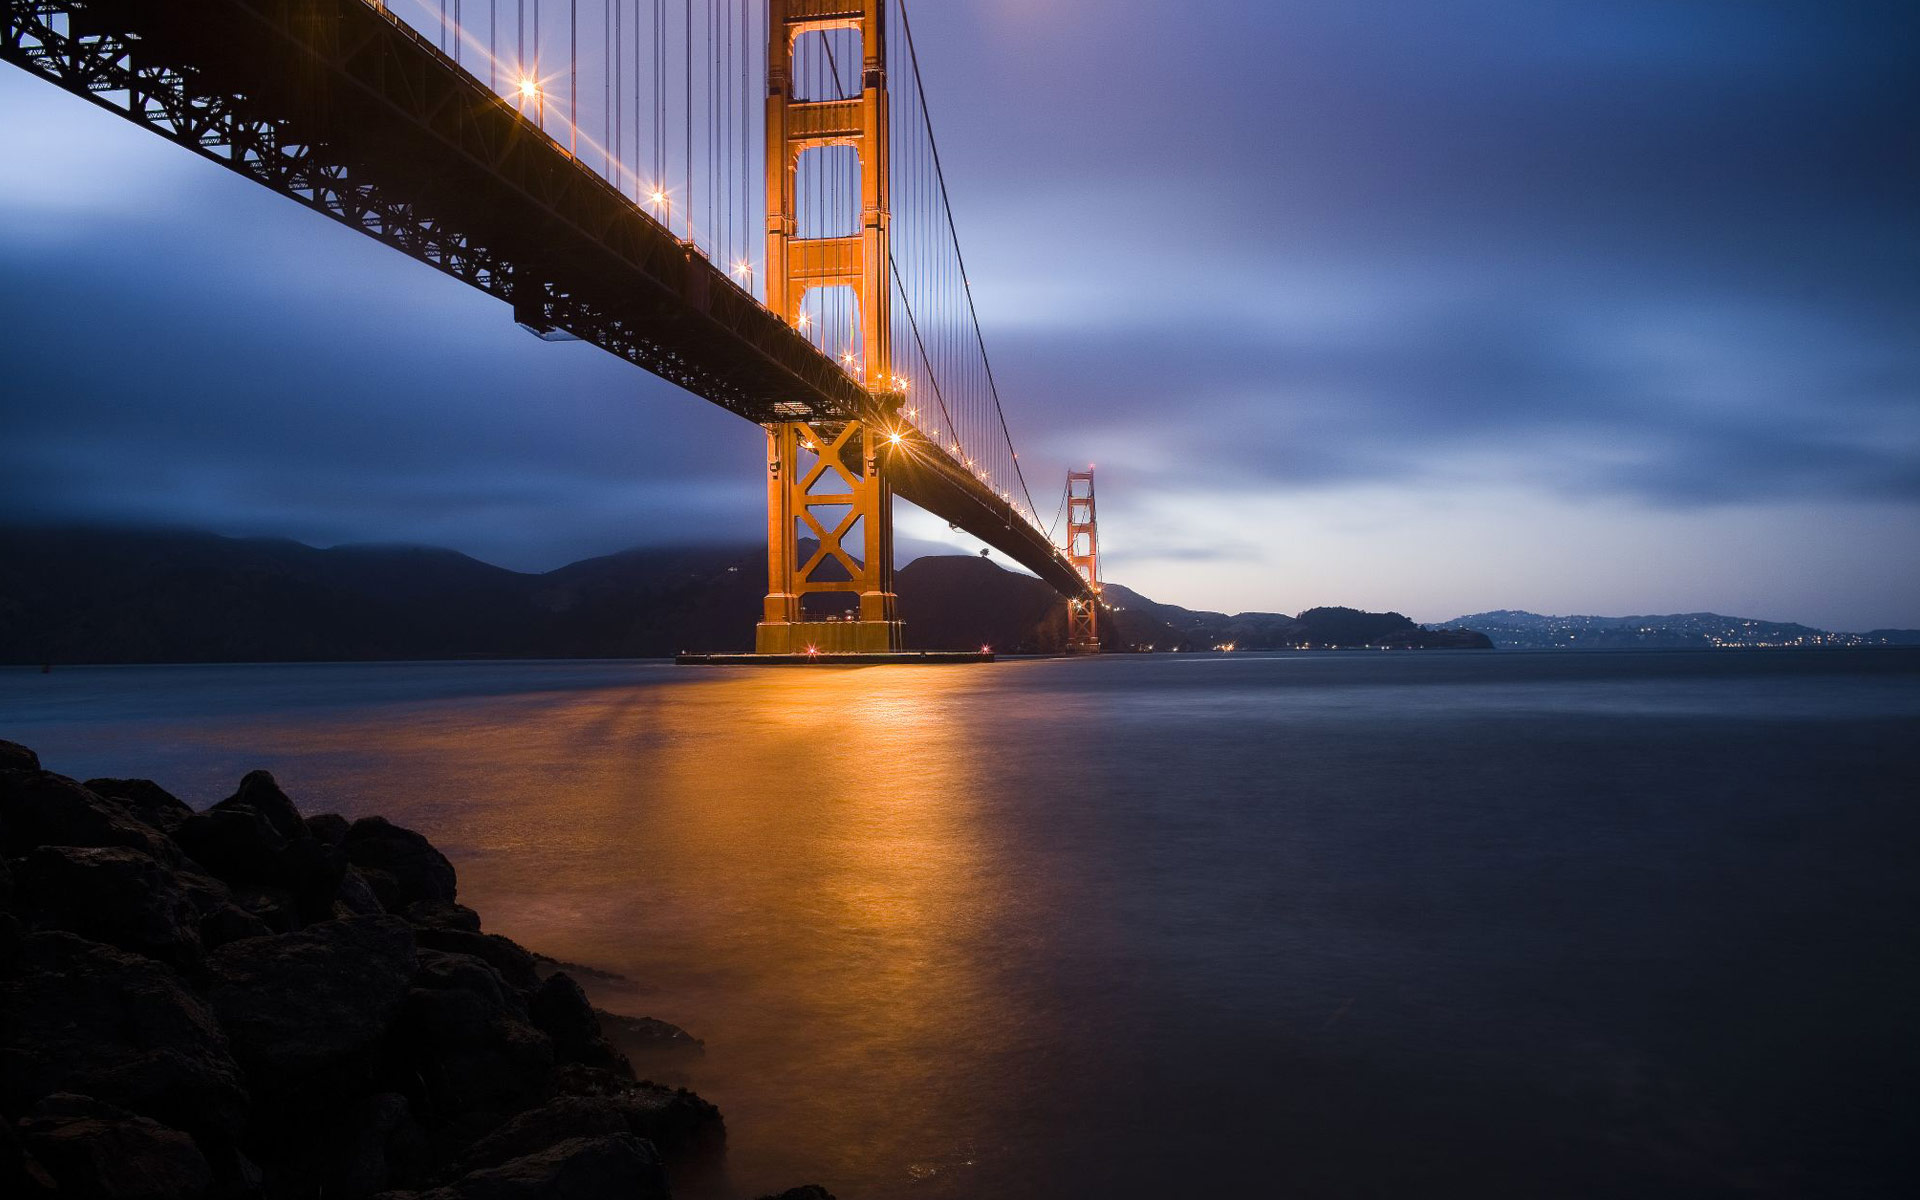 Bạn đang tìm kiếm một bức ảnh nền về kiến trúc đặc sắc để làm nền cho laptop của mình? Hãy thử với những hình ảnh liên quan đến từ khóa Golden Gate laptop background để mang đến cho mình một cảm giác về sự đẹp của kiến trúc hiện đại. Hãy teng các chiếc máy tính đến và trải nghiệm chúng ngay.